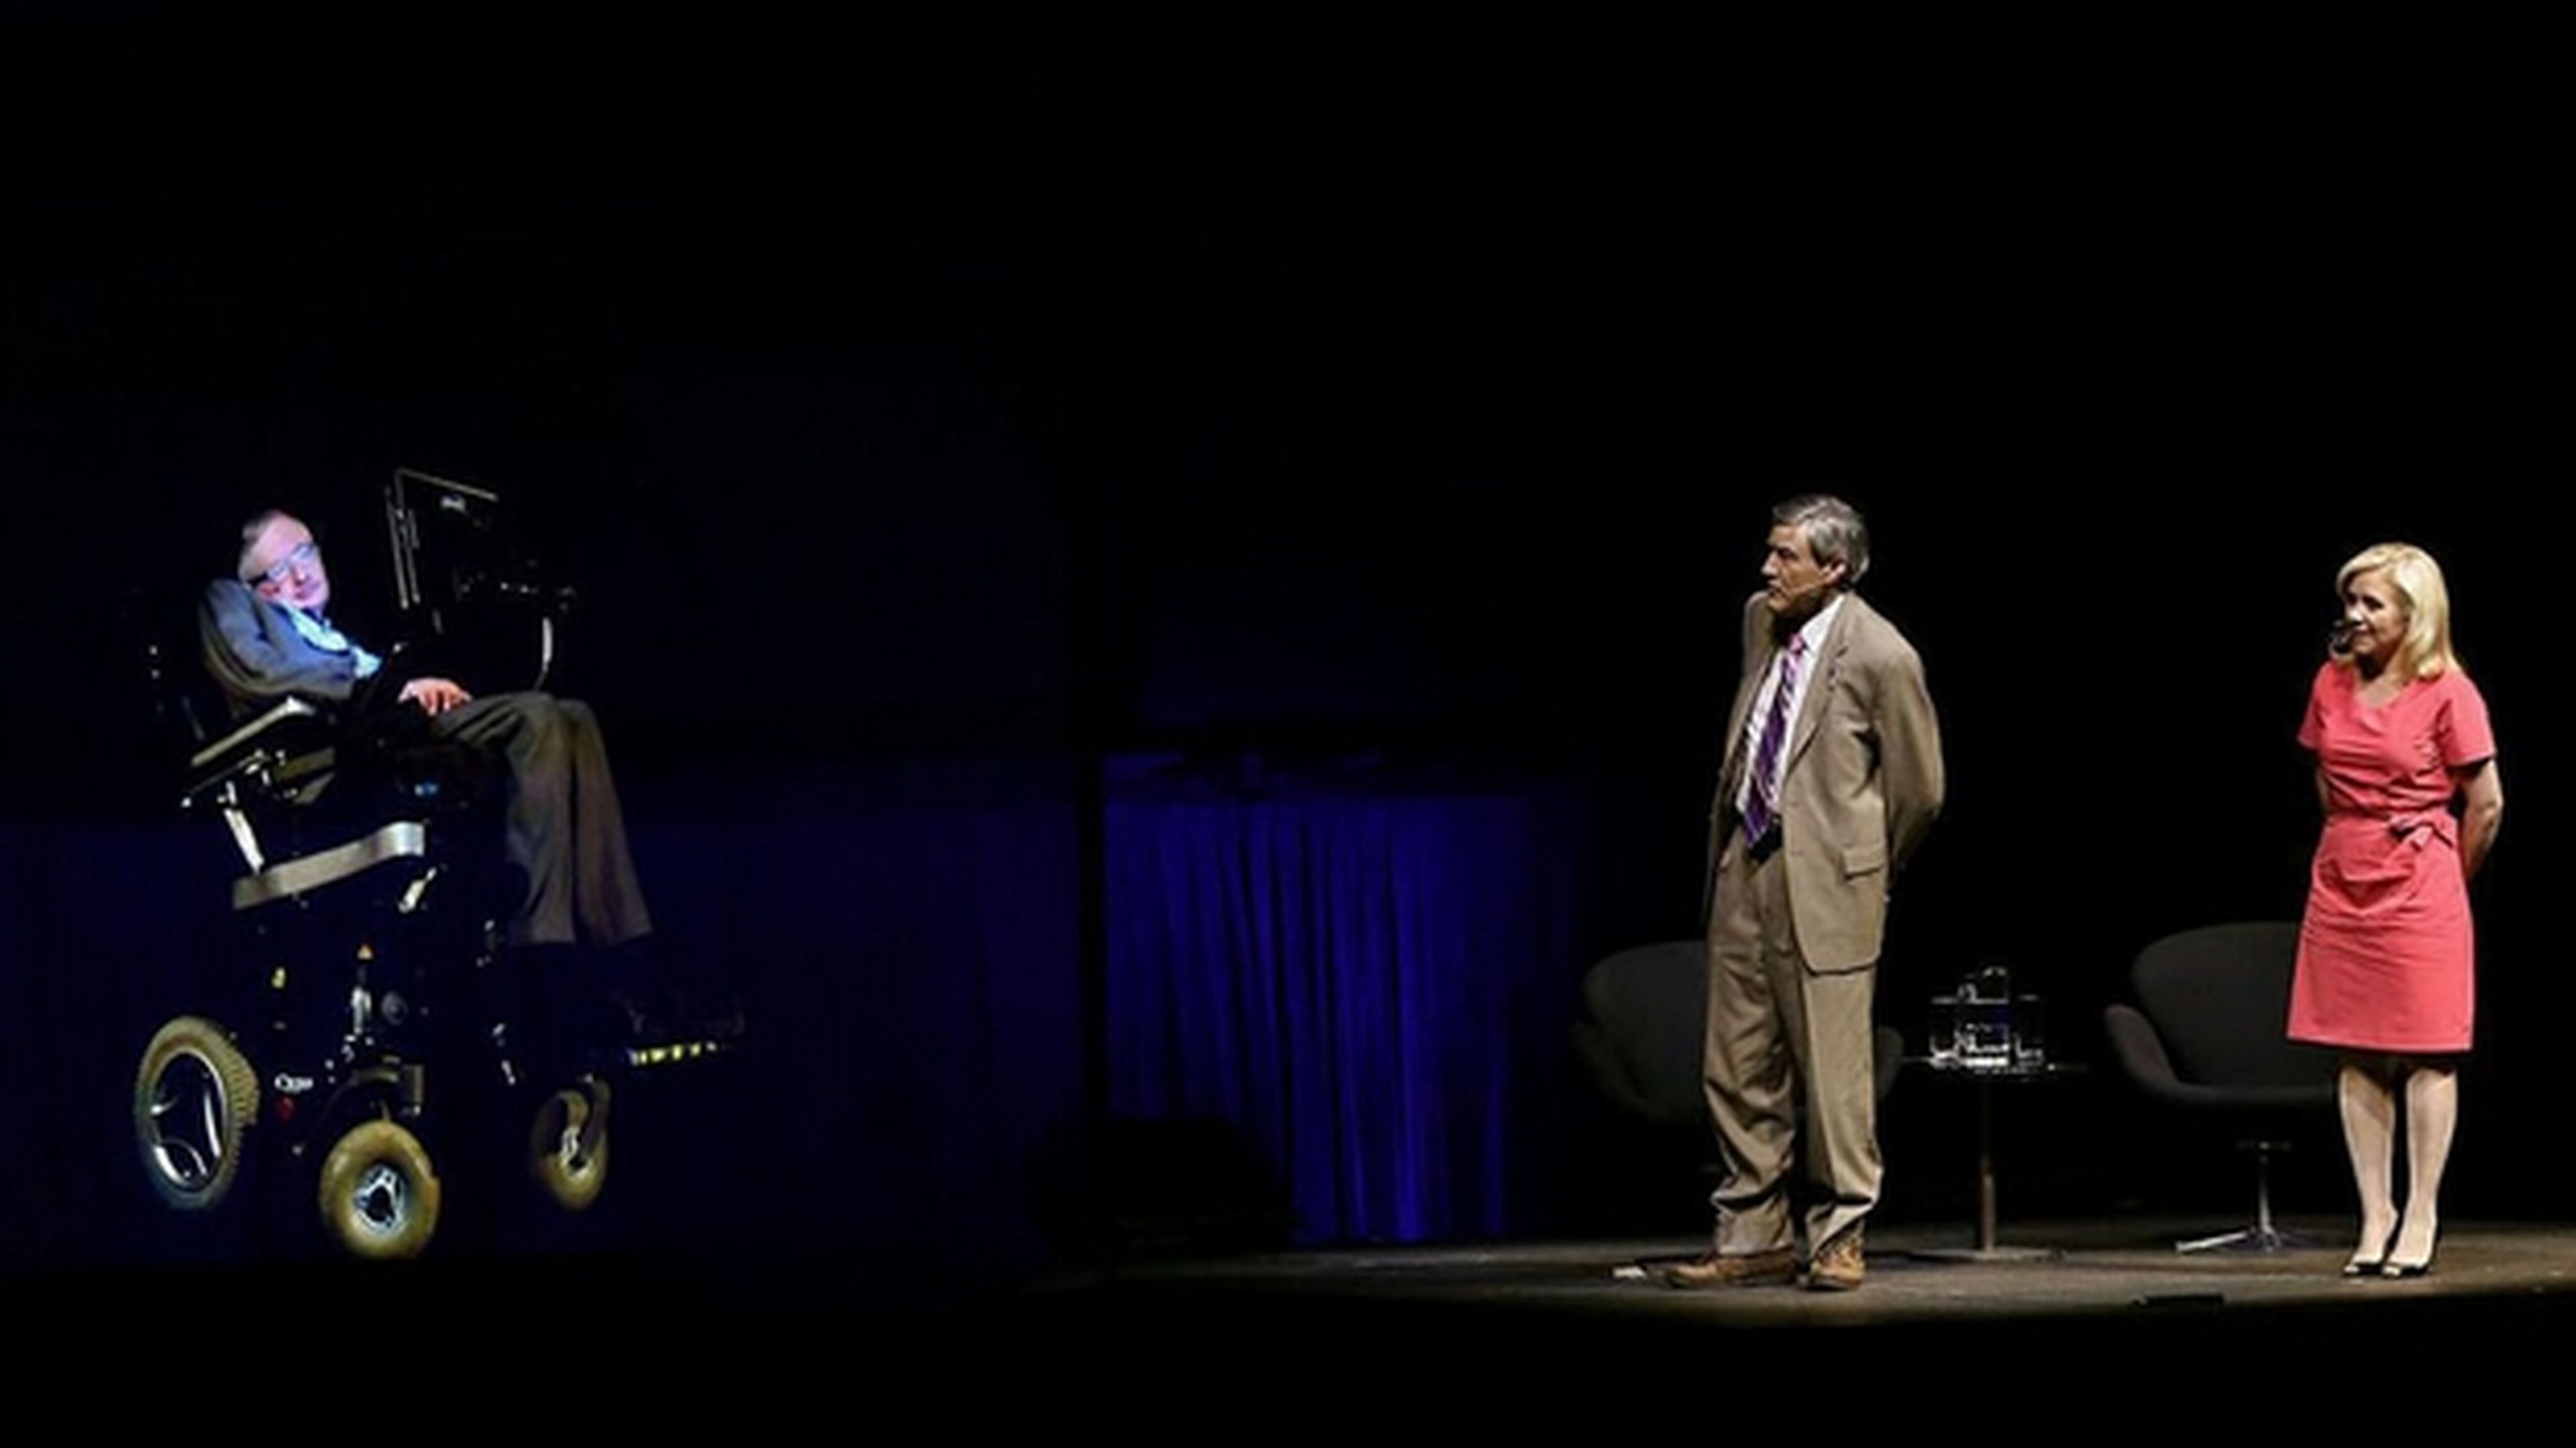 Stephen Hawking aparece en holograma en la Ópera de Sydney.